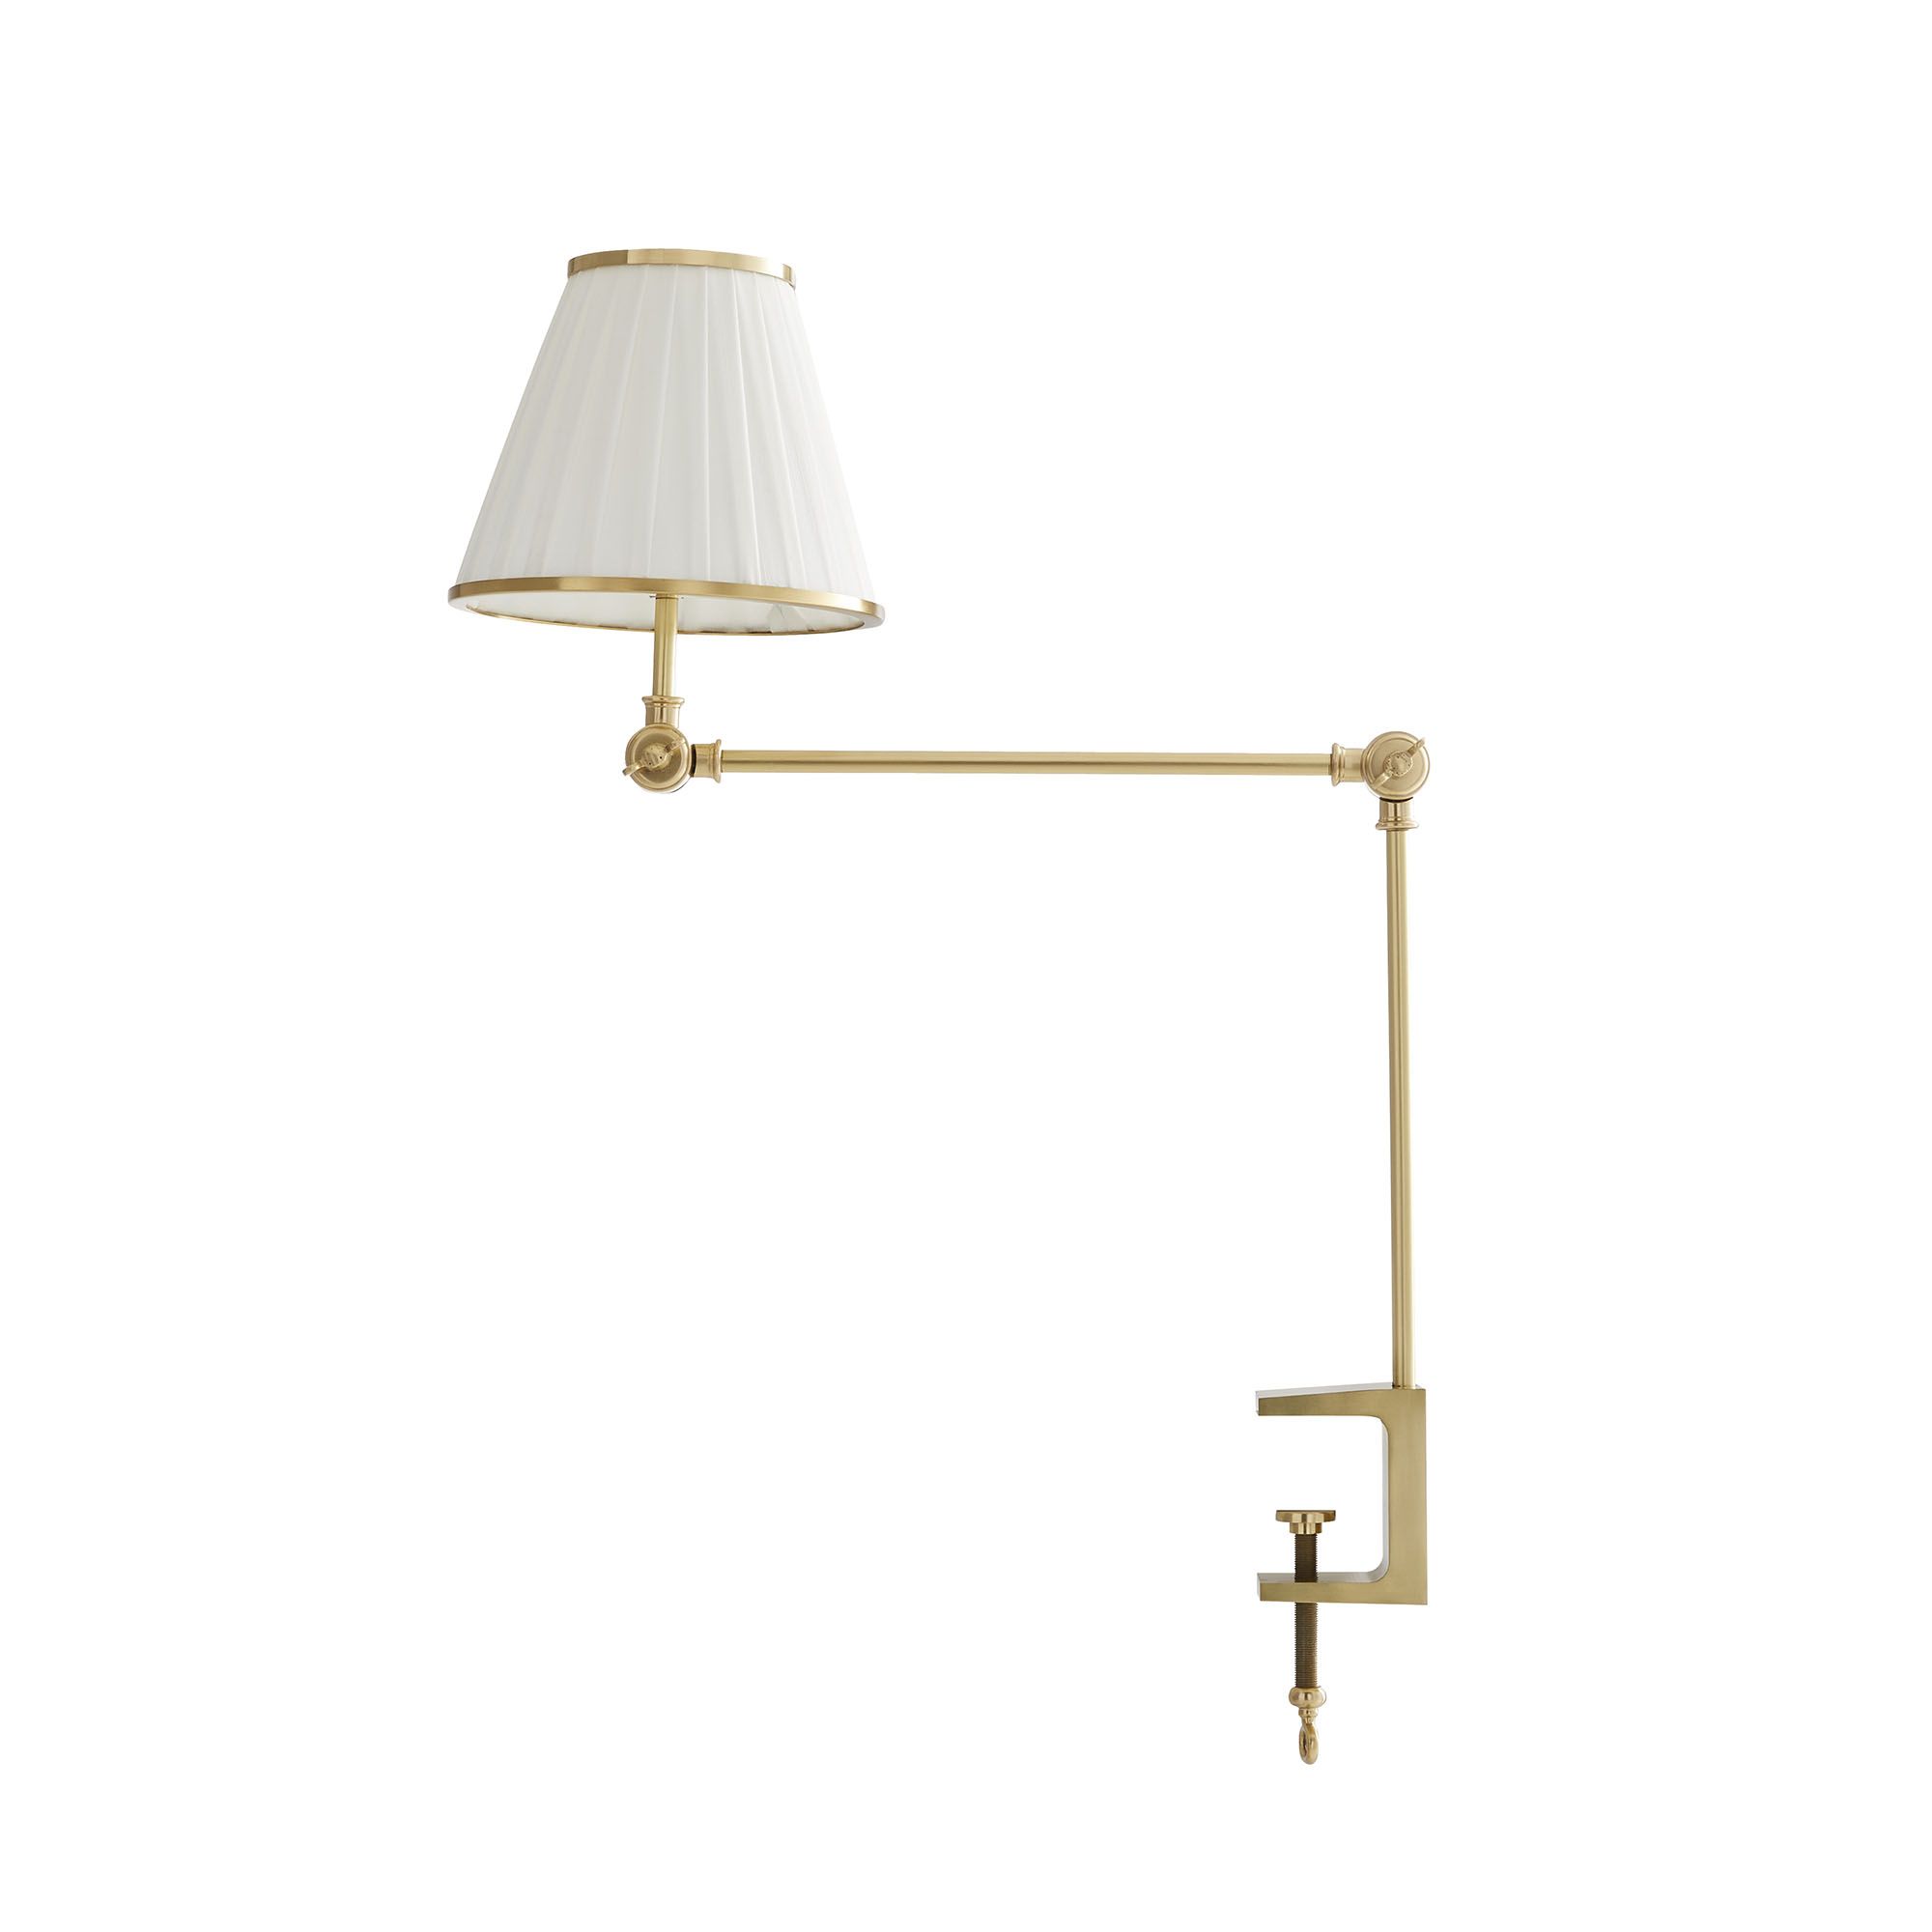 Купить Настольная лампа Tilt & Clamp Lamp в интернет-магазине roooms.ru